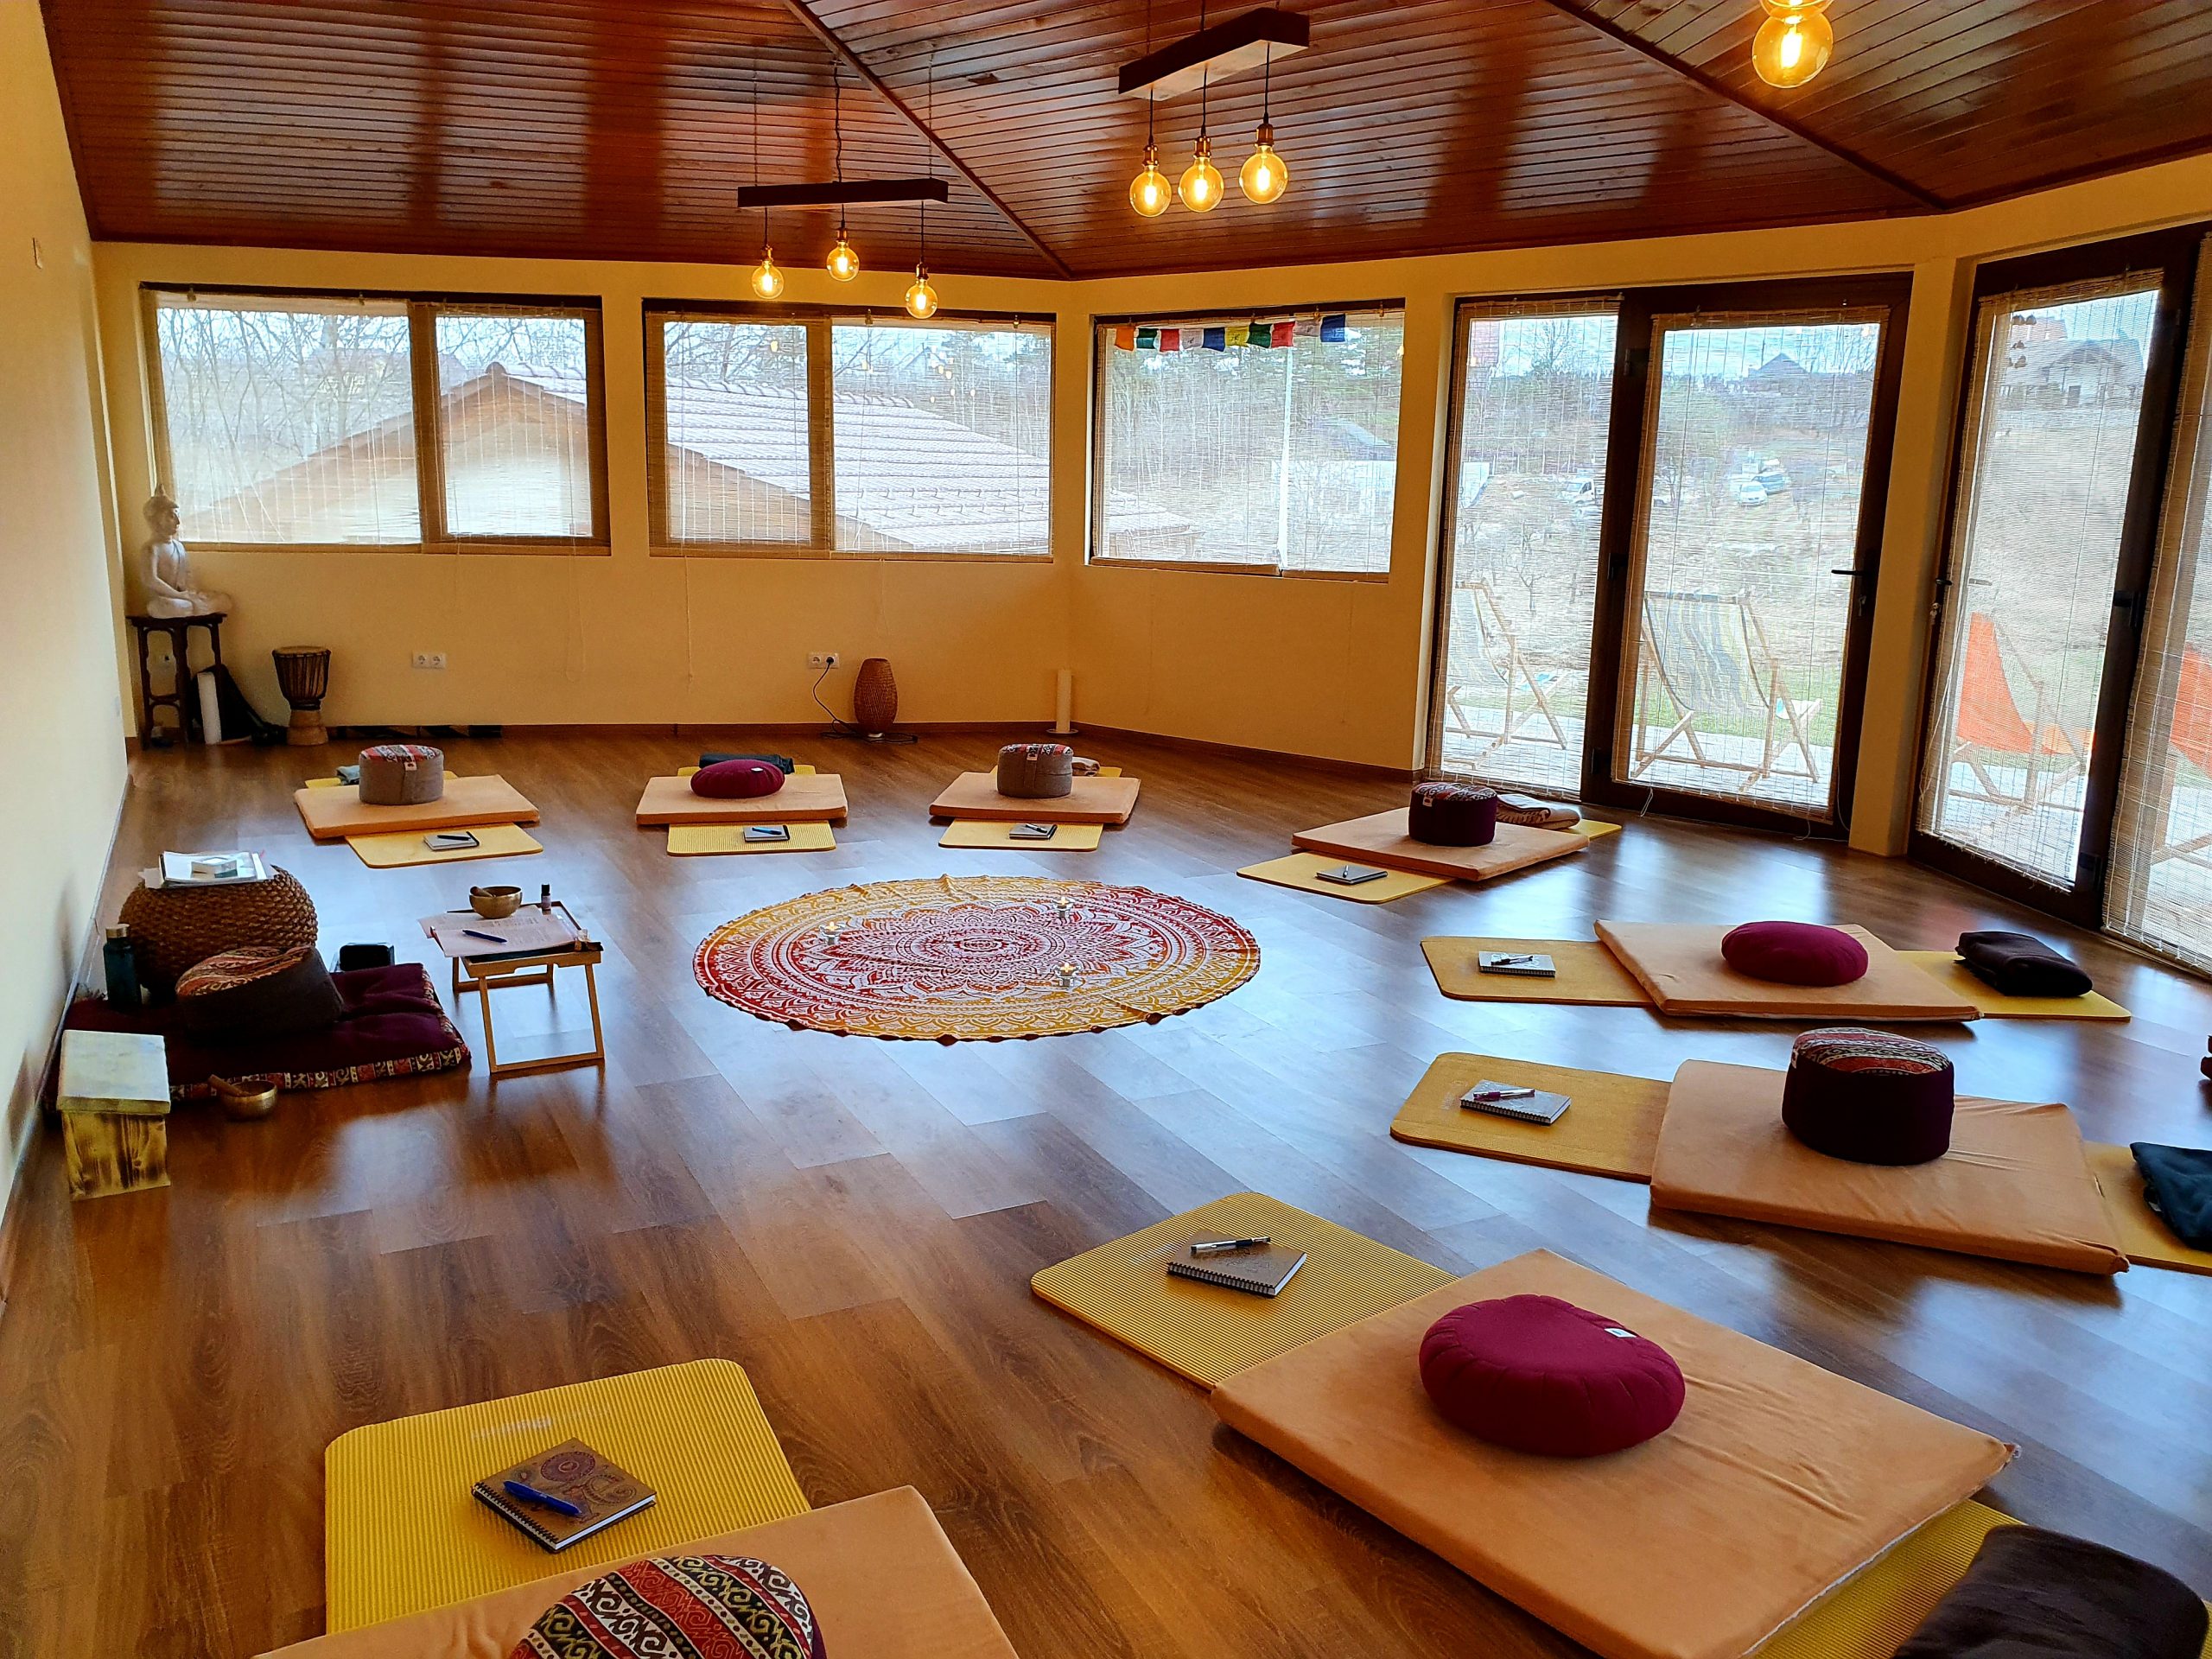 interior foisor forest villa detox mindfulness